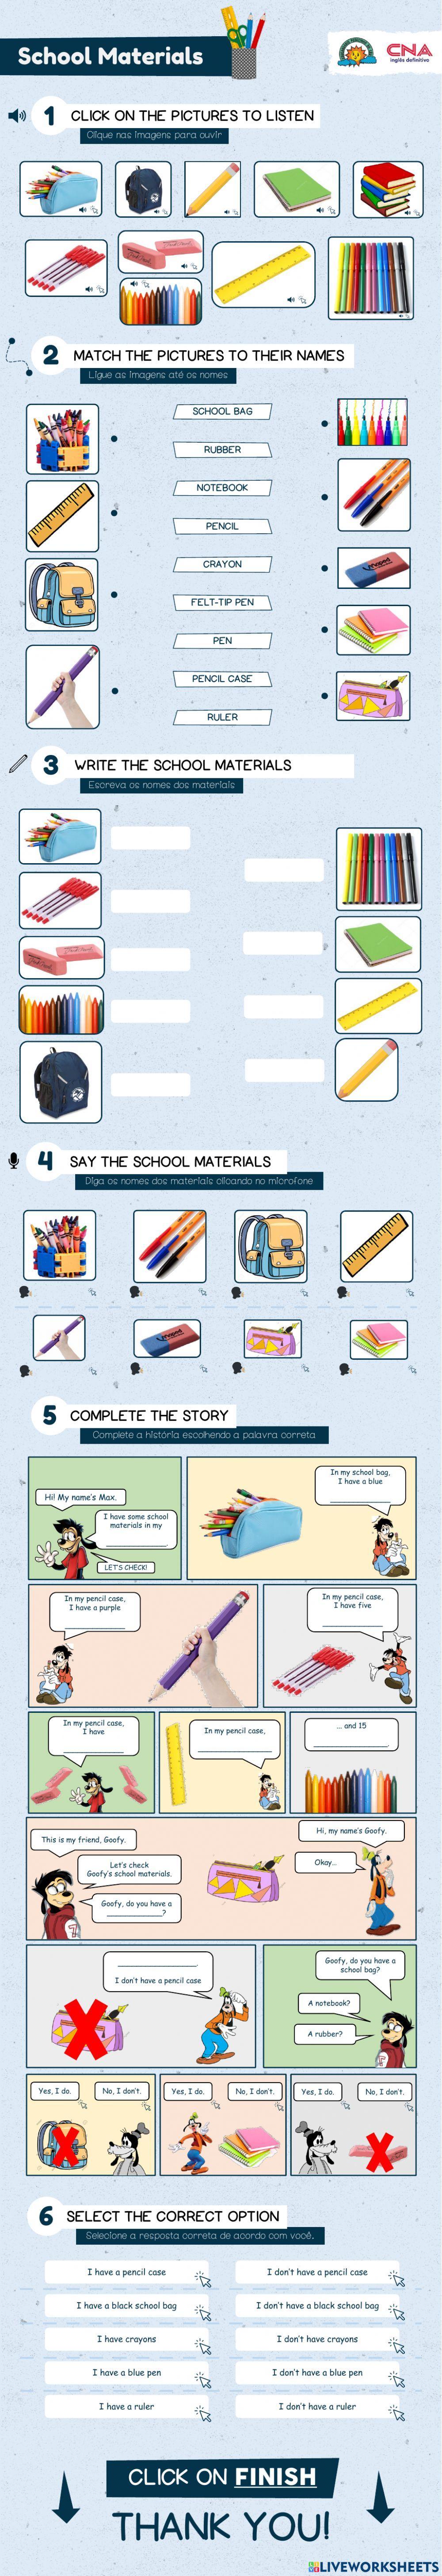 School Materials